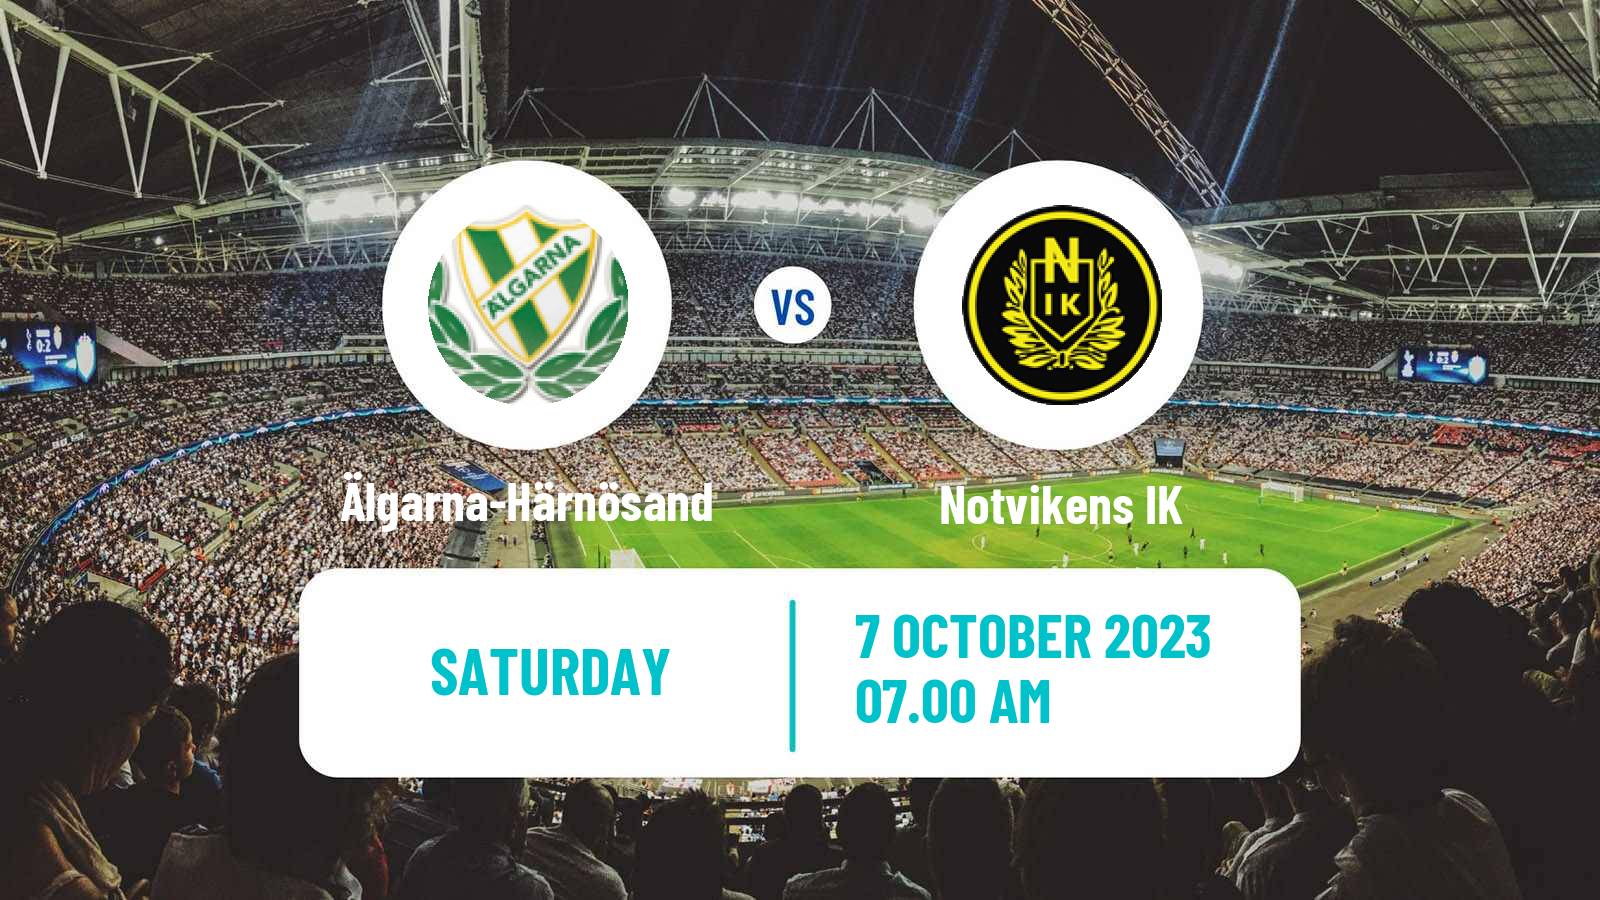 Soccer Swedish Division 2 - Norrland Älgarna-Härnösand - Notvikens